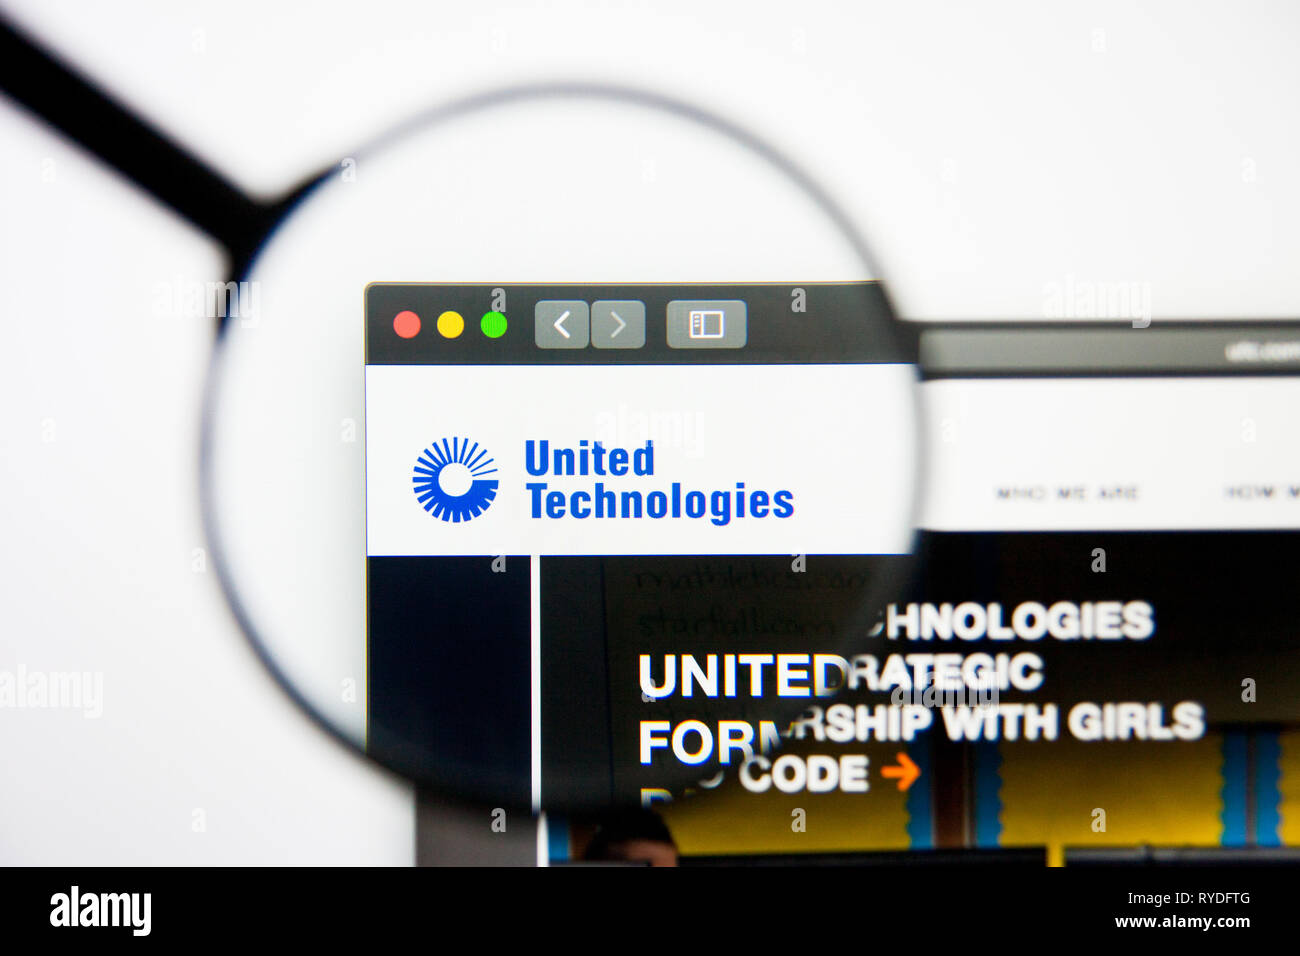 Los Angeles, Kalifornien, USA - 5. März 2019: United Technologies Website Homepage. United Technologies Logo sichtbar auf dem Display, Illustrative Stockfoto